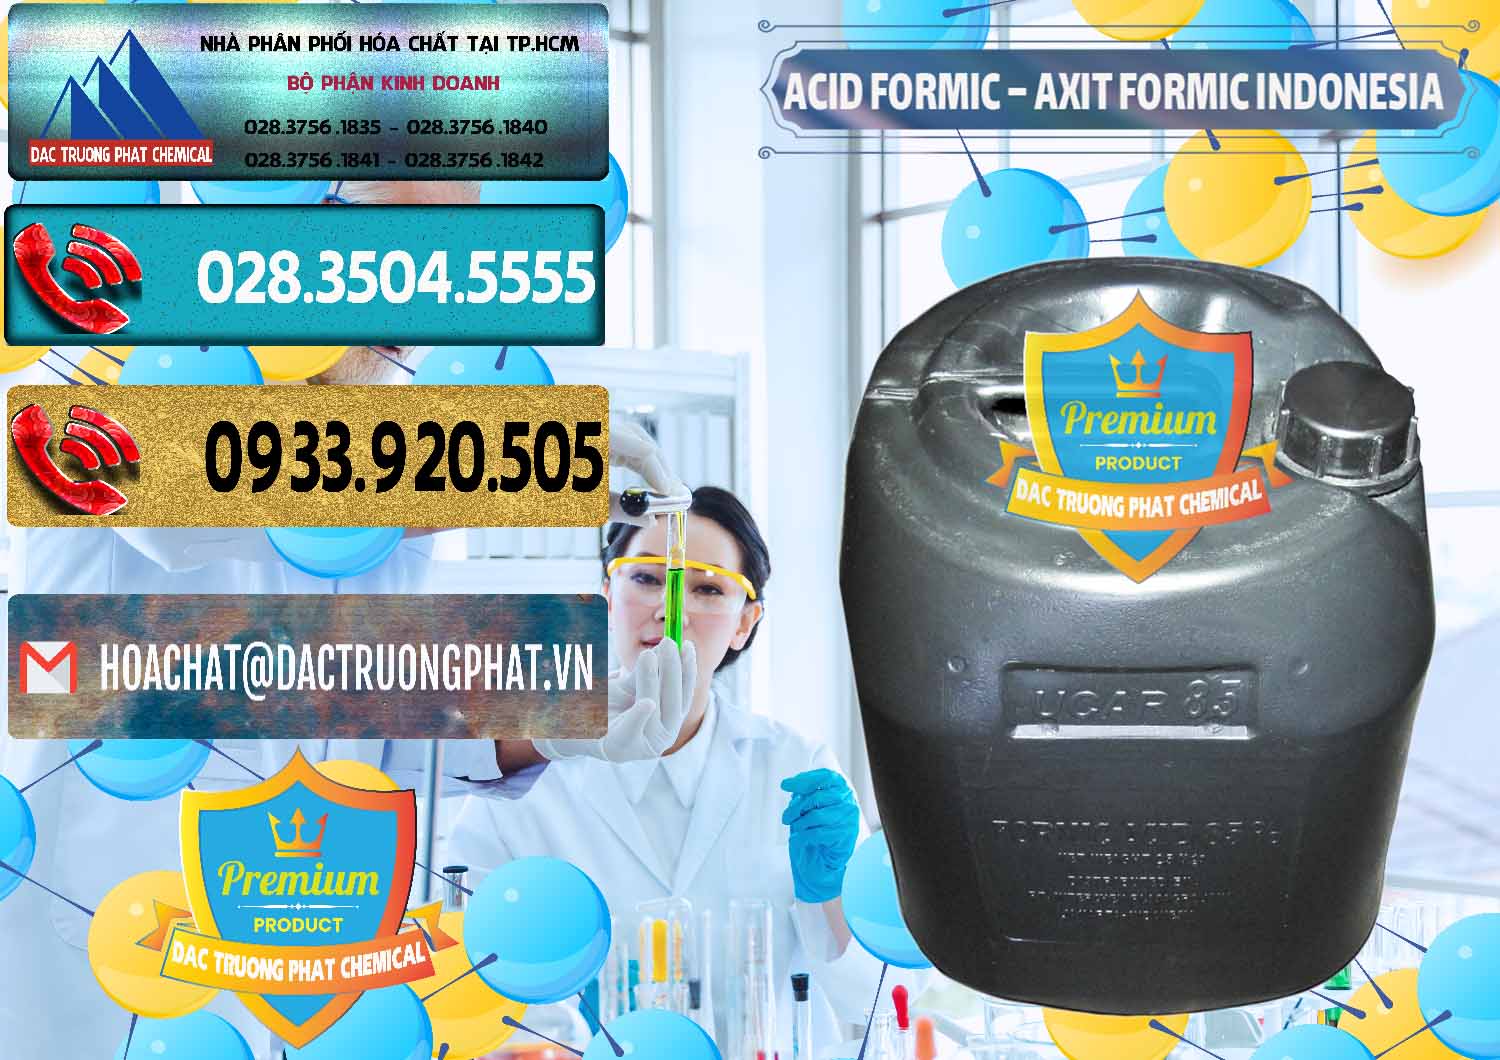 Nơi chuyên kinh doanh - bán Acid Formic - Axit Formic Indonesia - 0026 - Cung cấp ( phân phối ) hóa chất tại TP.HCM - hoachatdetnhuom.com